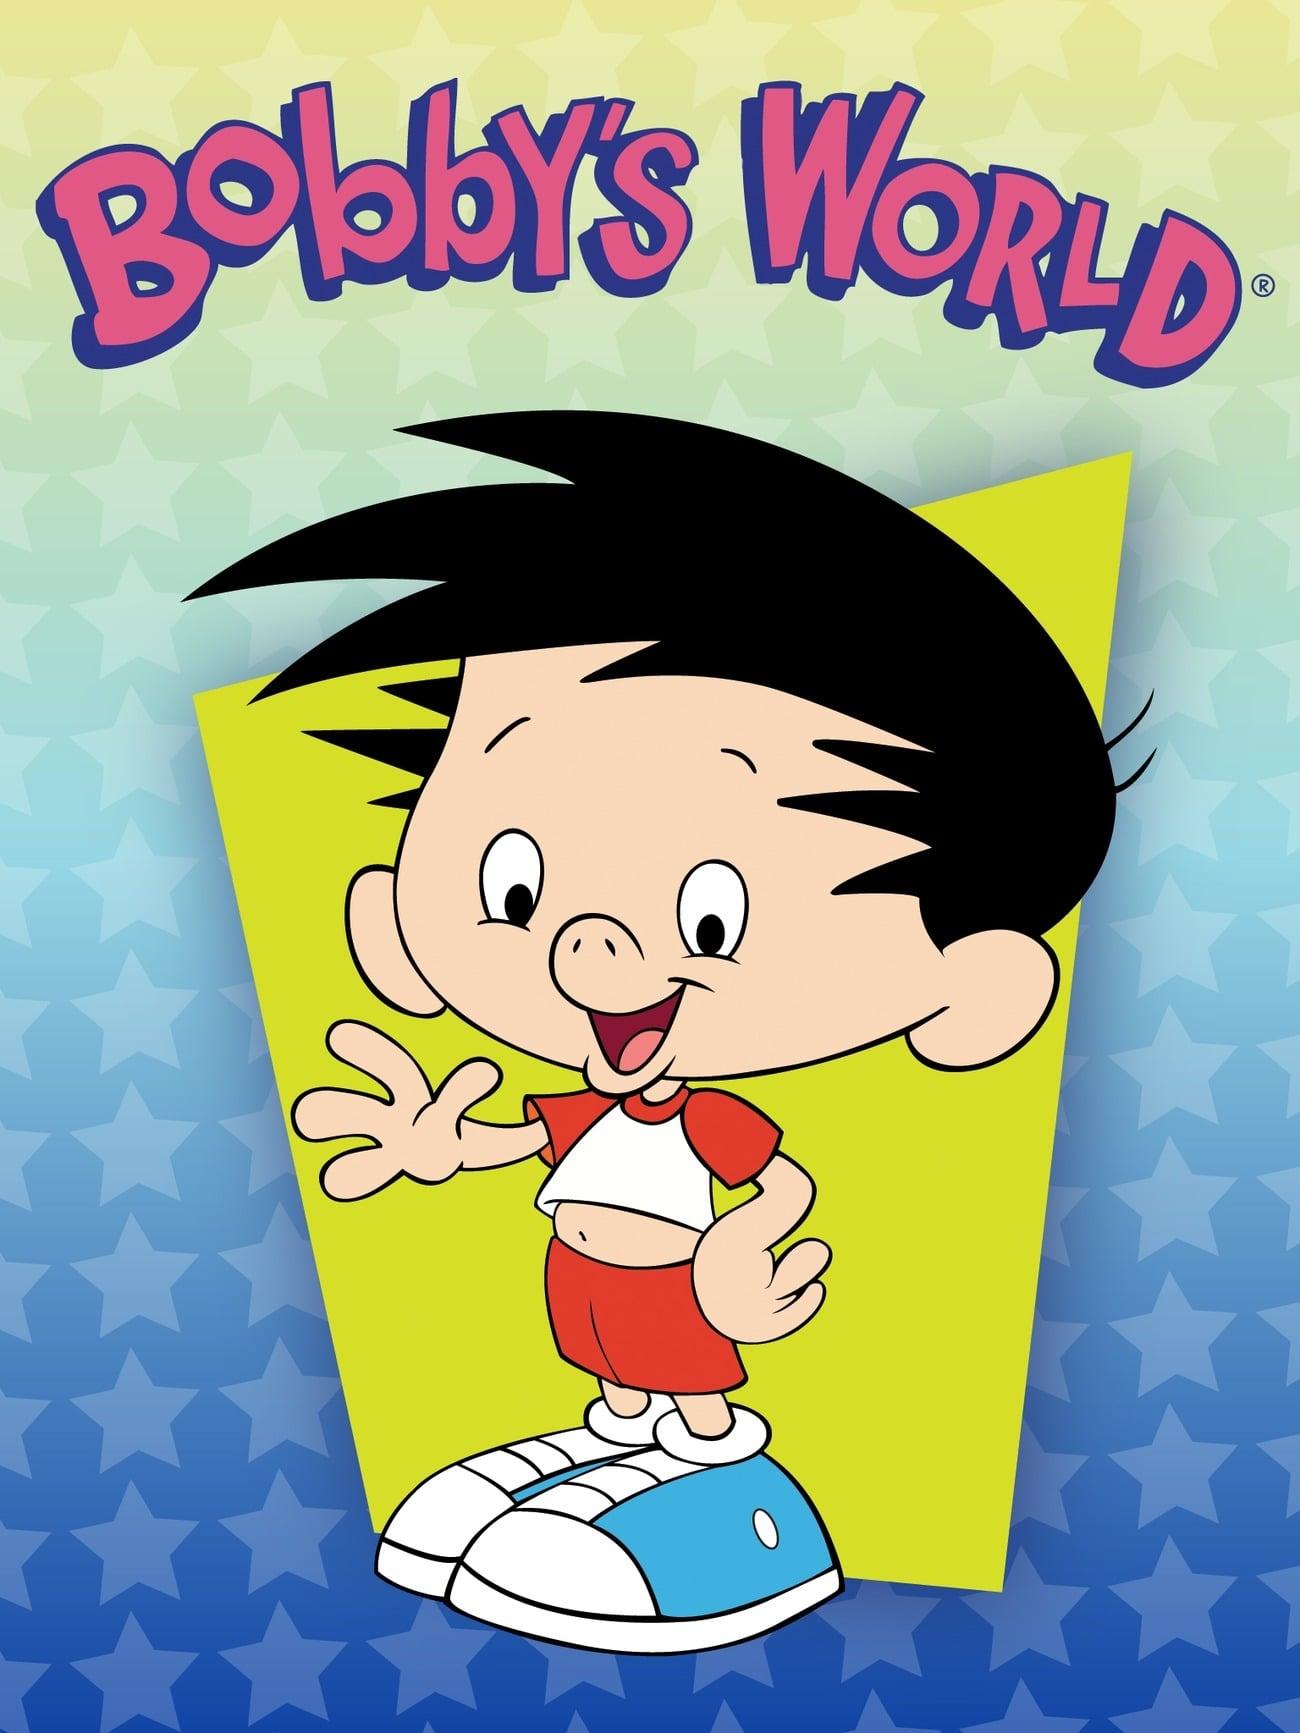 Bobby's World poster